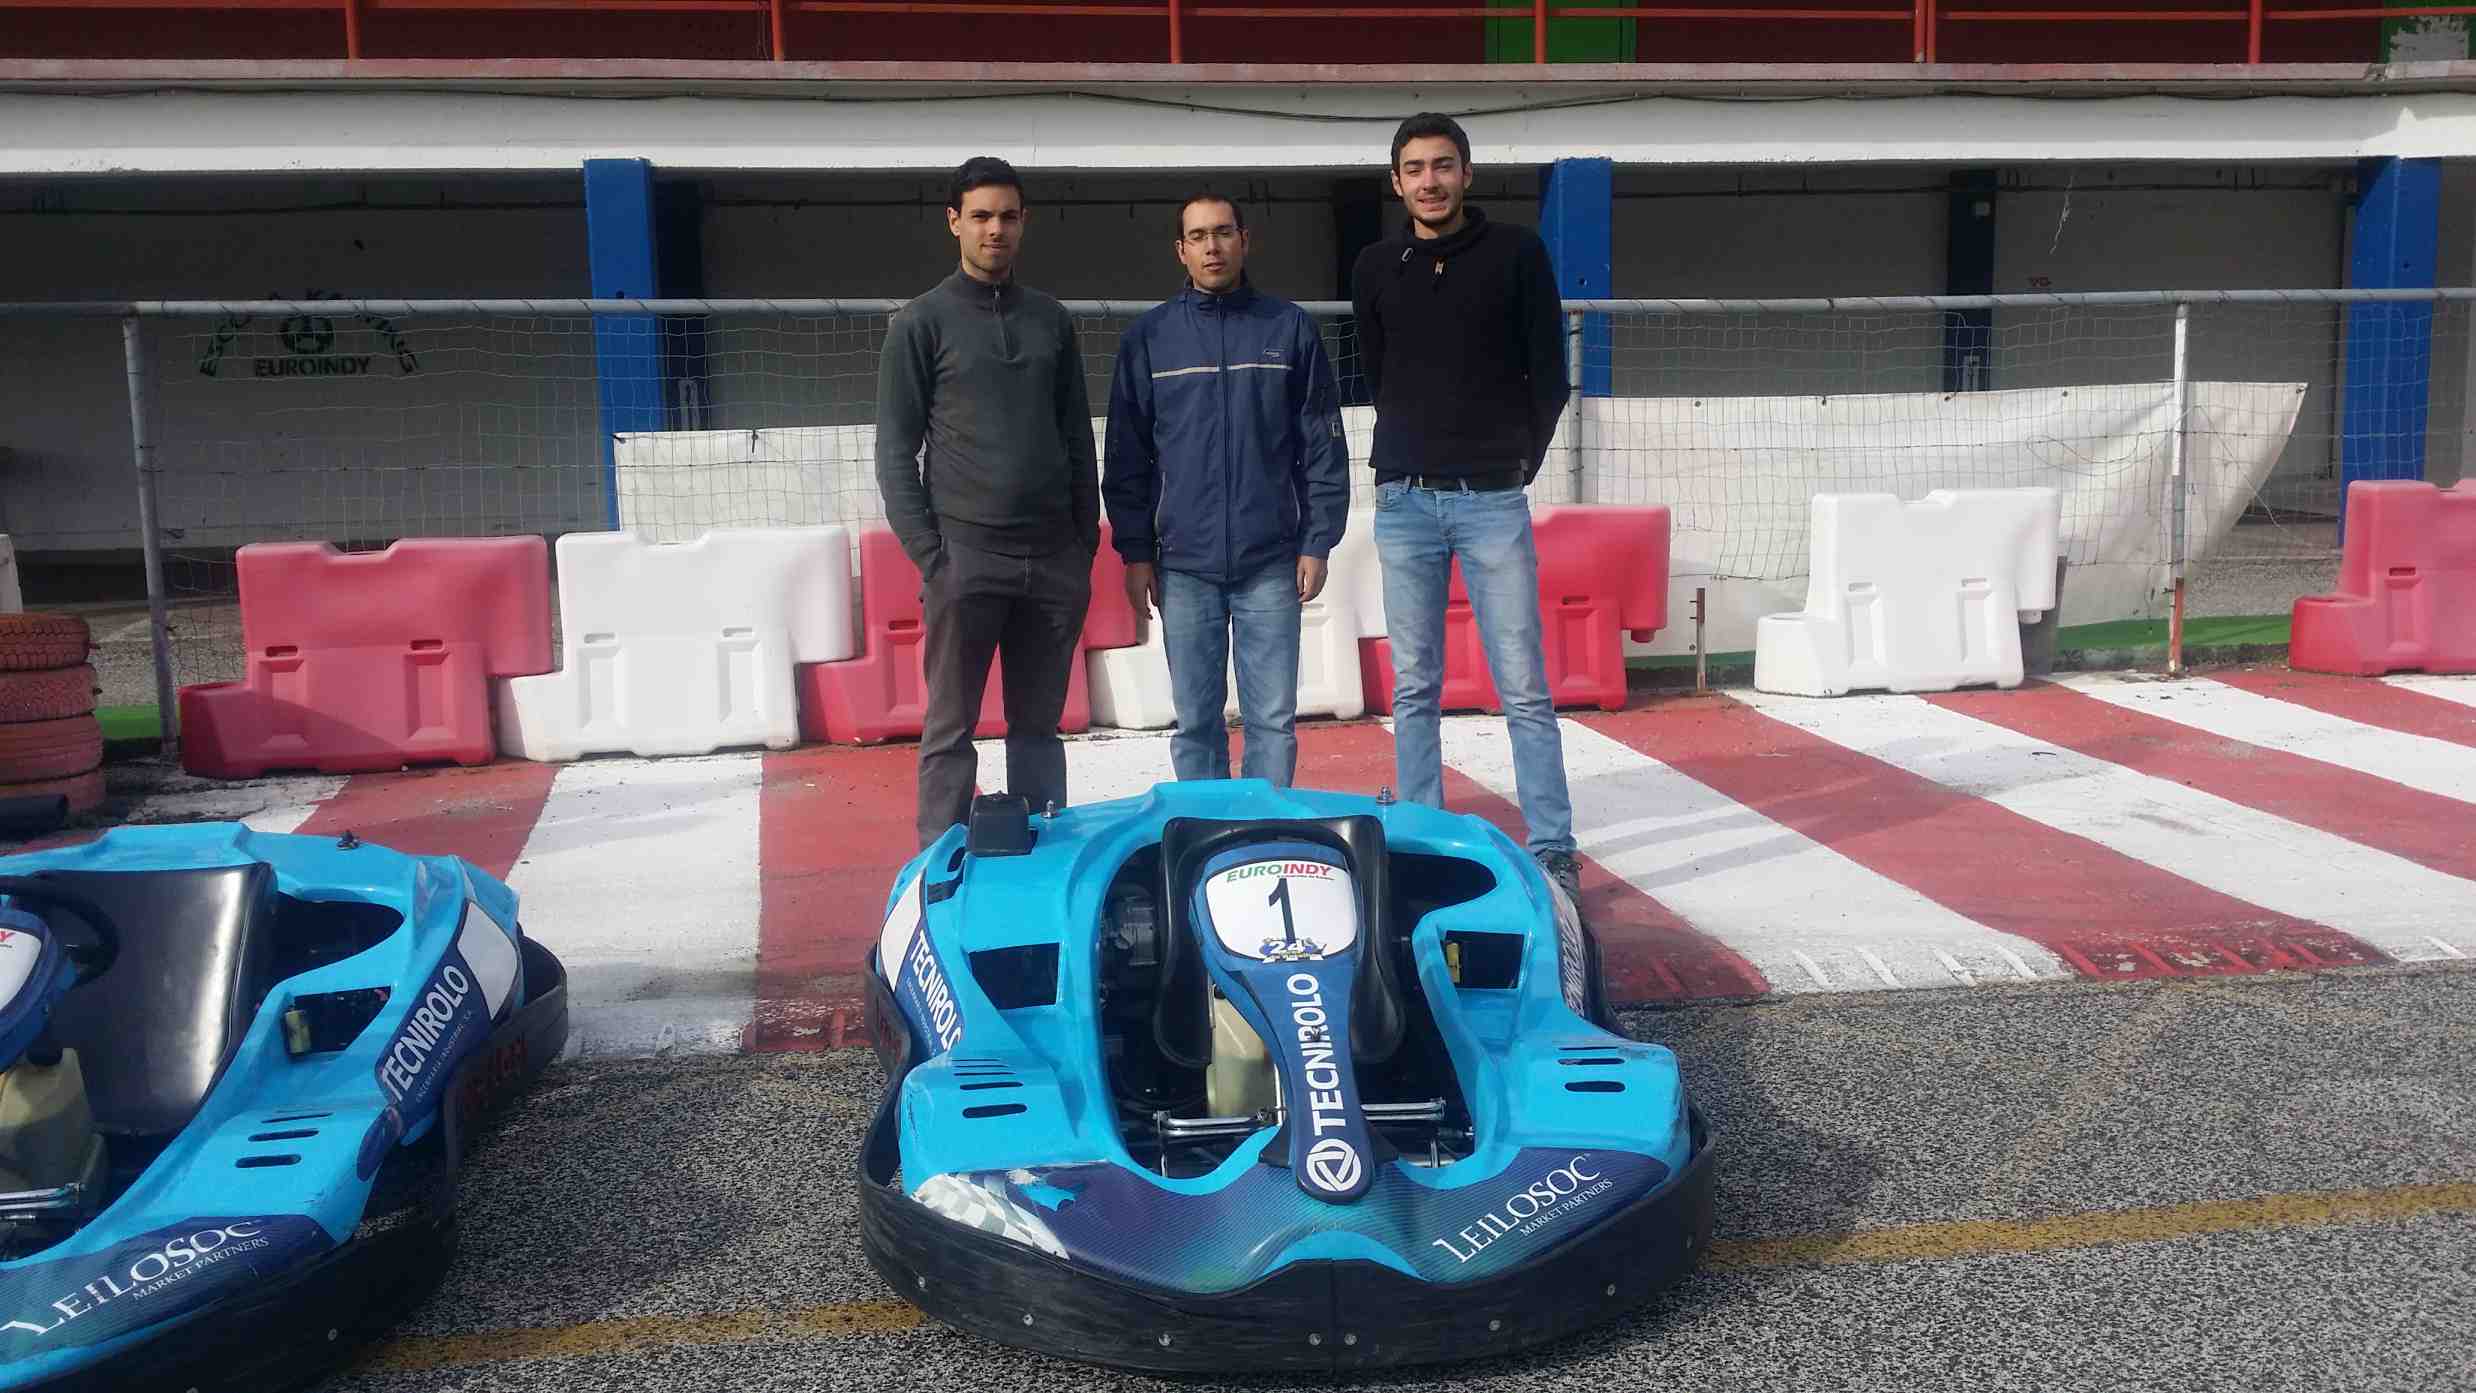 VIII Troféu de Karting do Politécnico de Leiria36